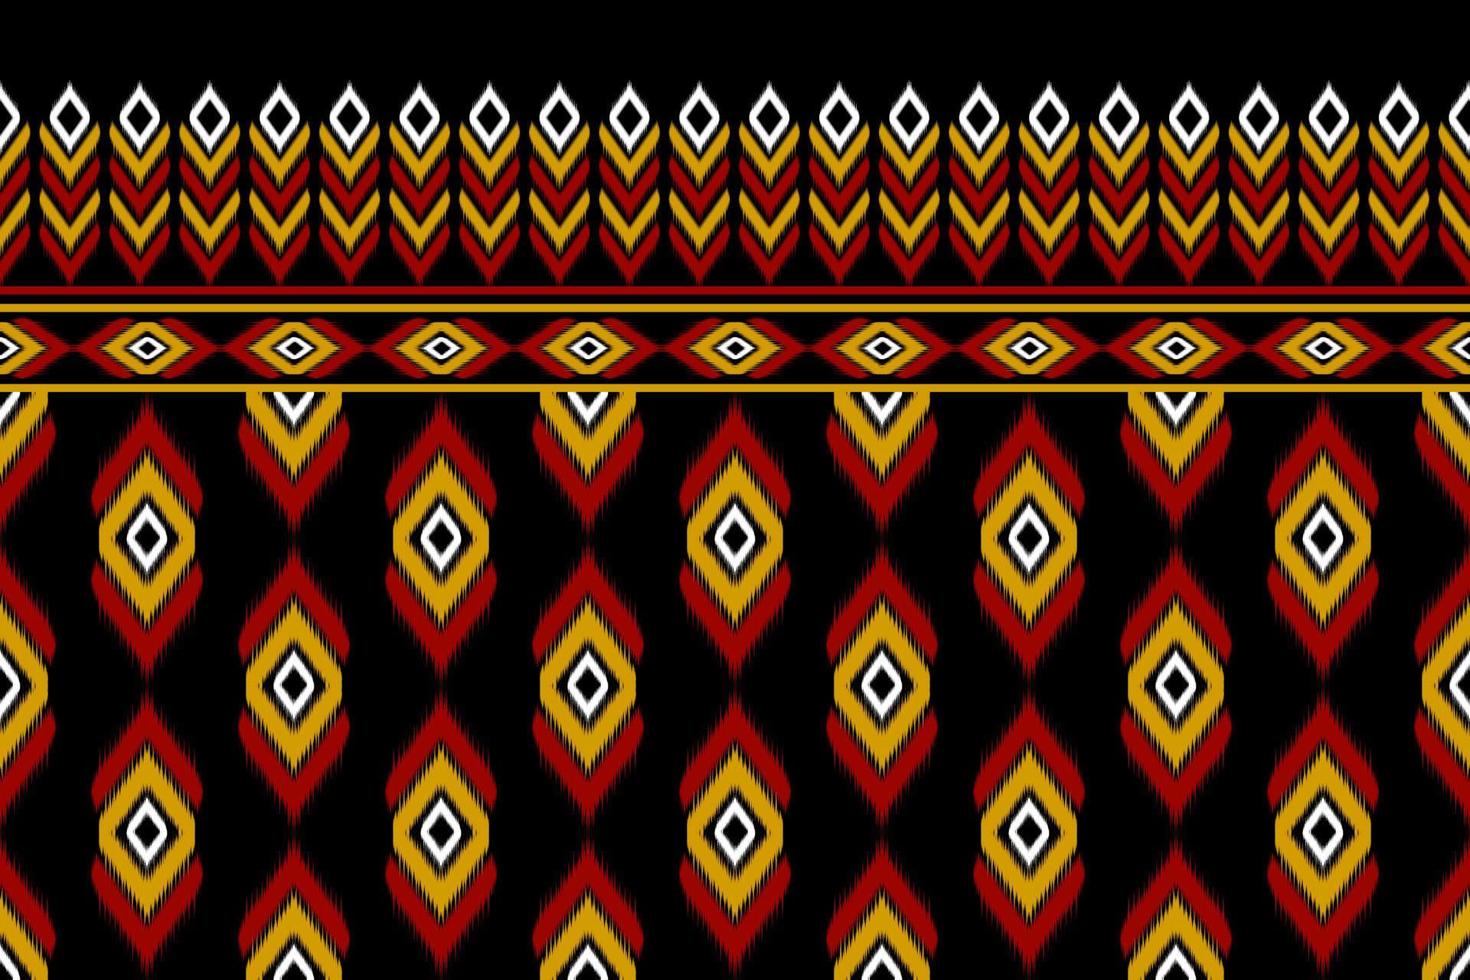 arte abstrata bela ikat. sem costura padrão étnico em tribal. estilo mexicano listrado. design para plano de fundo, ilustração, embrulho, roupas, batik, tecido, bordado. vetor